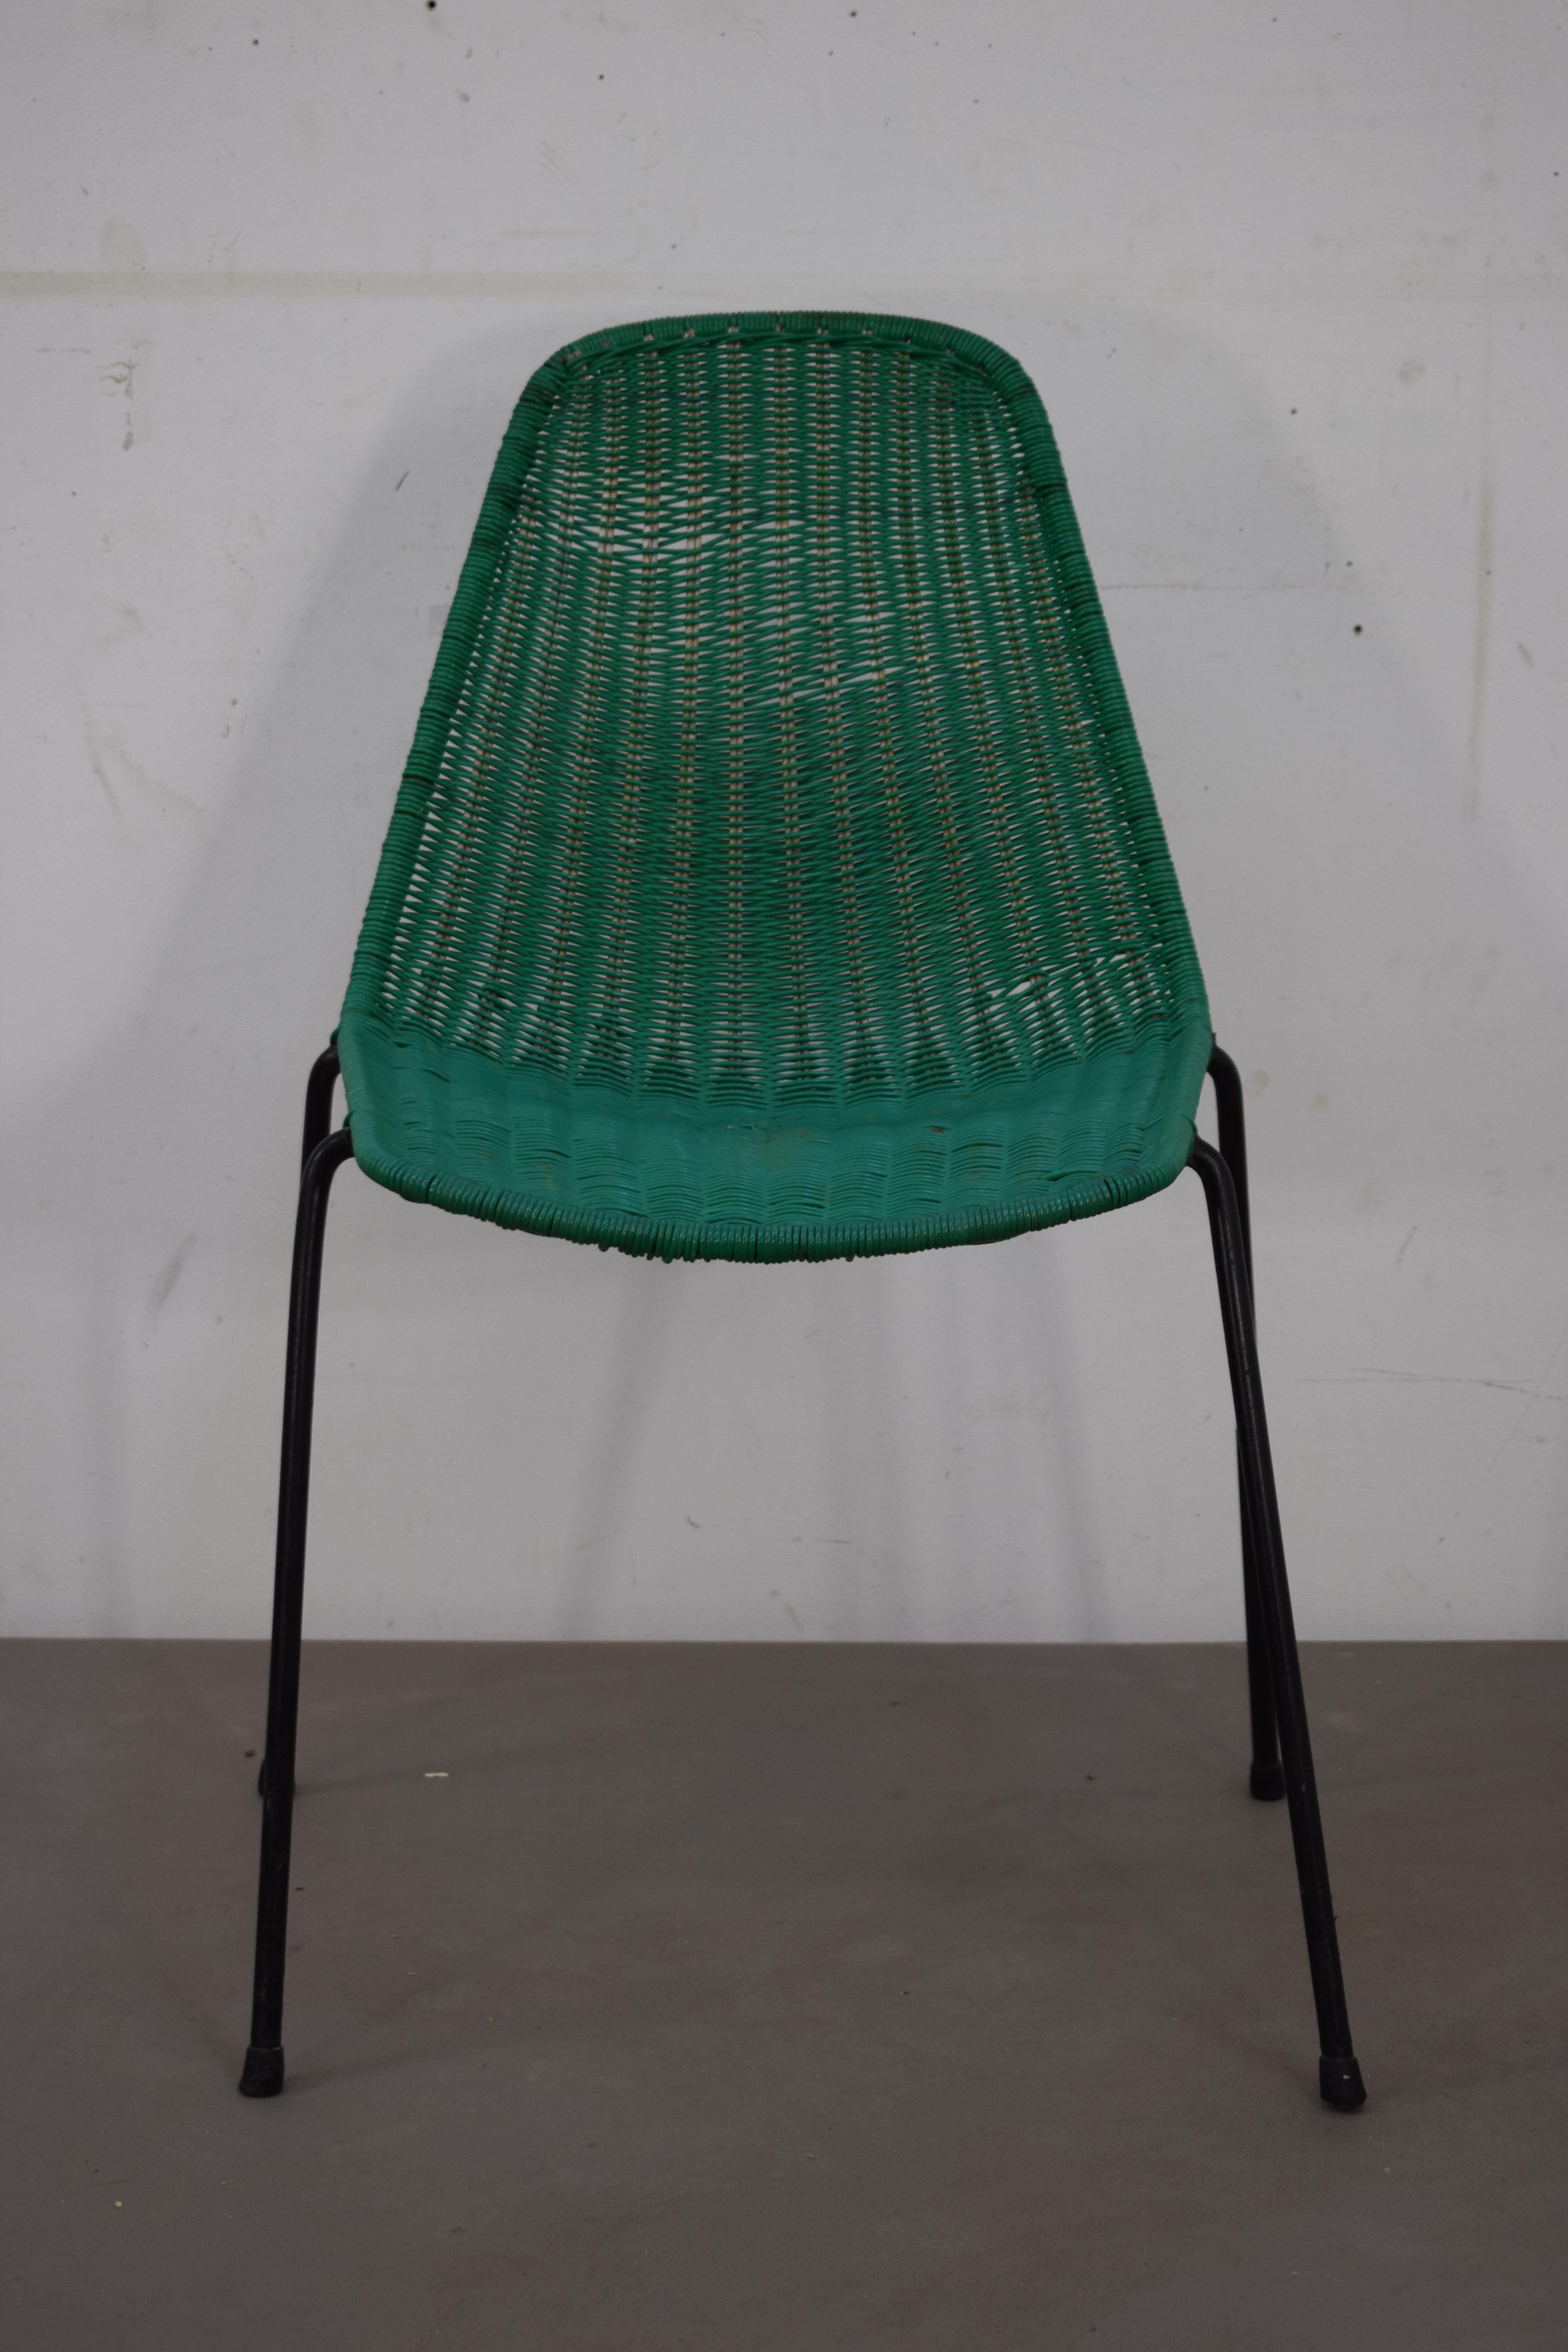 Gianfranco Legler, ensemble de deux chaises, années 1960.
Dimensions : H=80 cm ; L=50 cm ; P=53 cm ; Hauteur du siège : 45 cm : H=80 cm ; L=50 cm ; P=53 cm ; Hauteur assise= 45 cm.